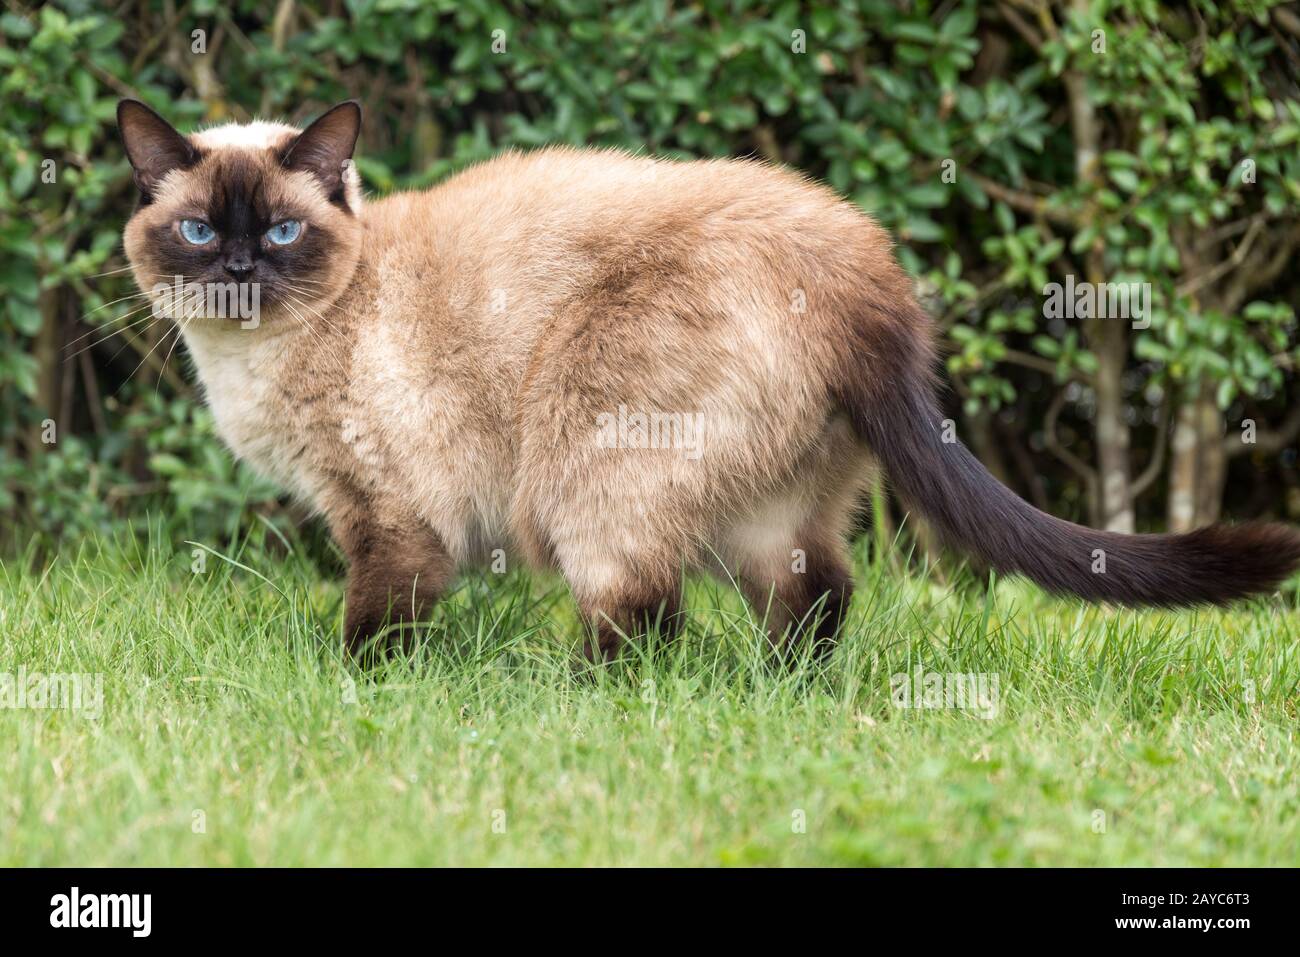 magnifique chat de ragdoll avec yeux bleus se tient attentivement dans l'herbe verte Banque D'Images